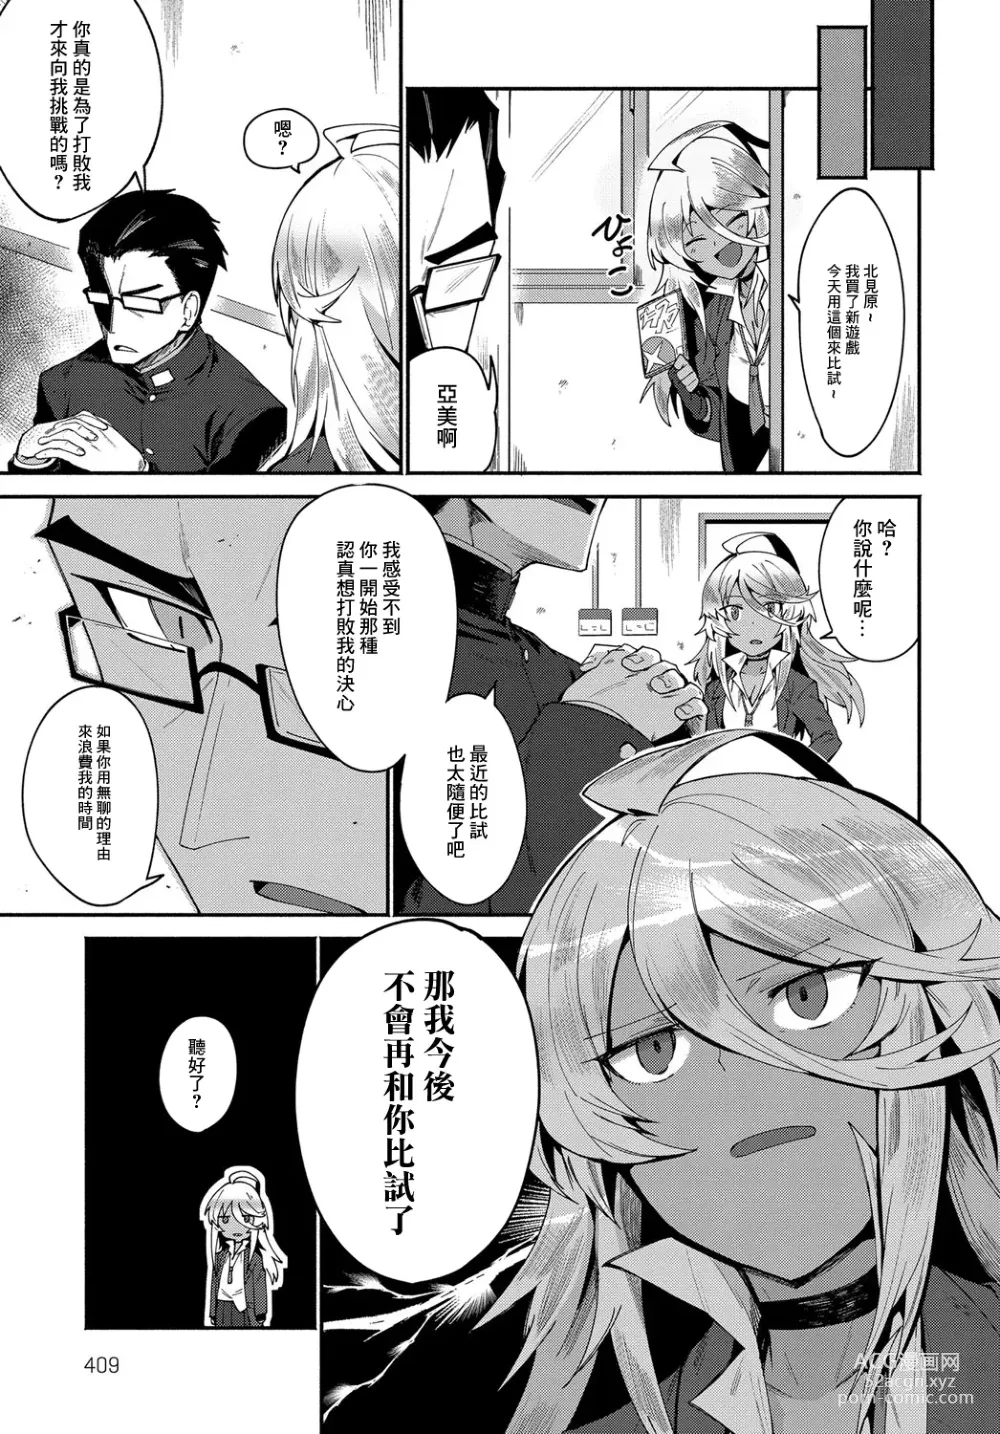 Page 3 of manga AMI FIGHT